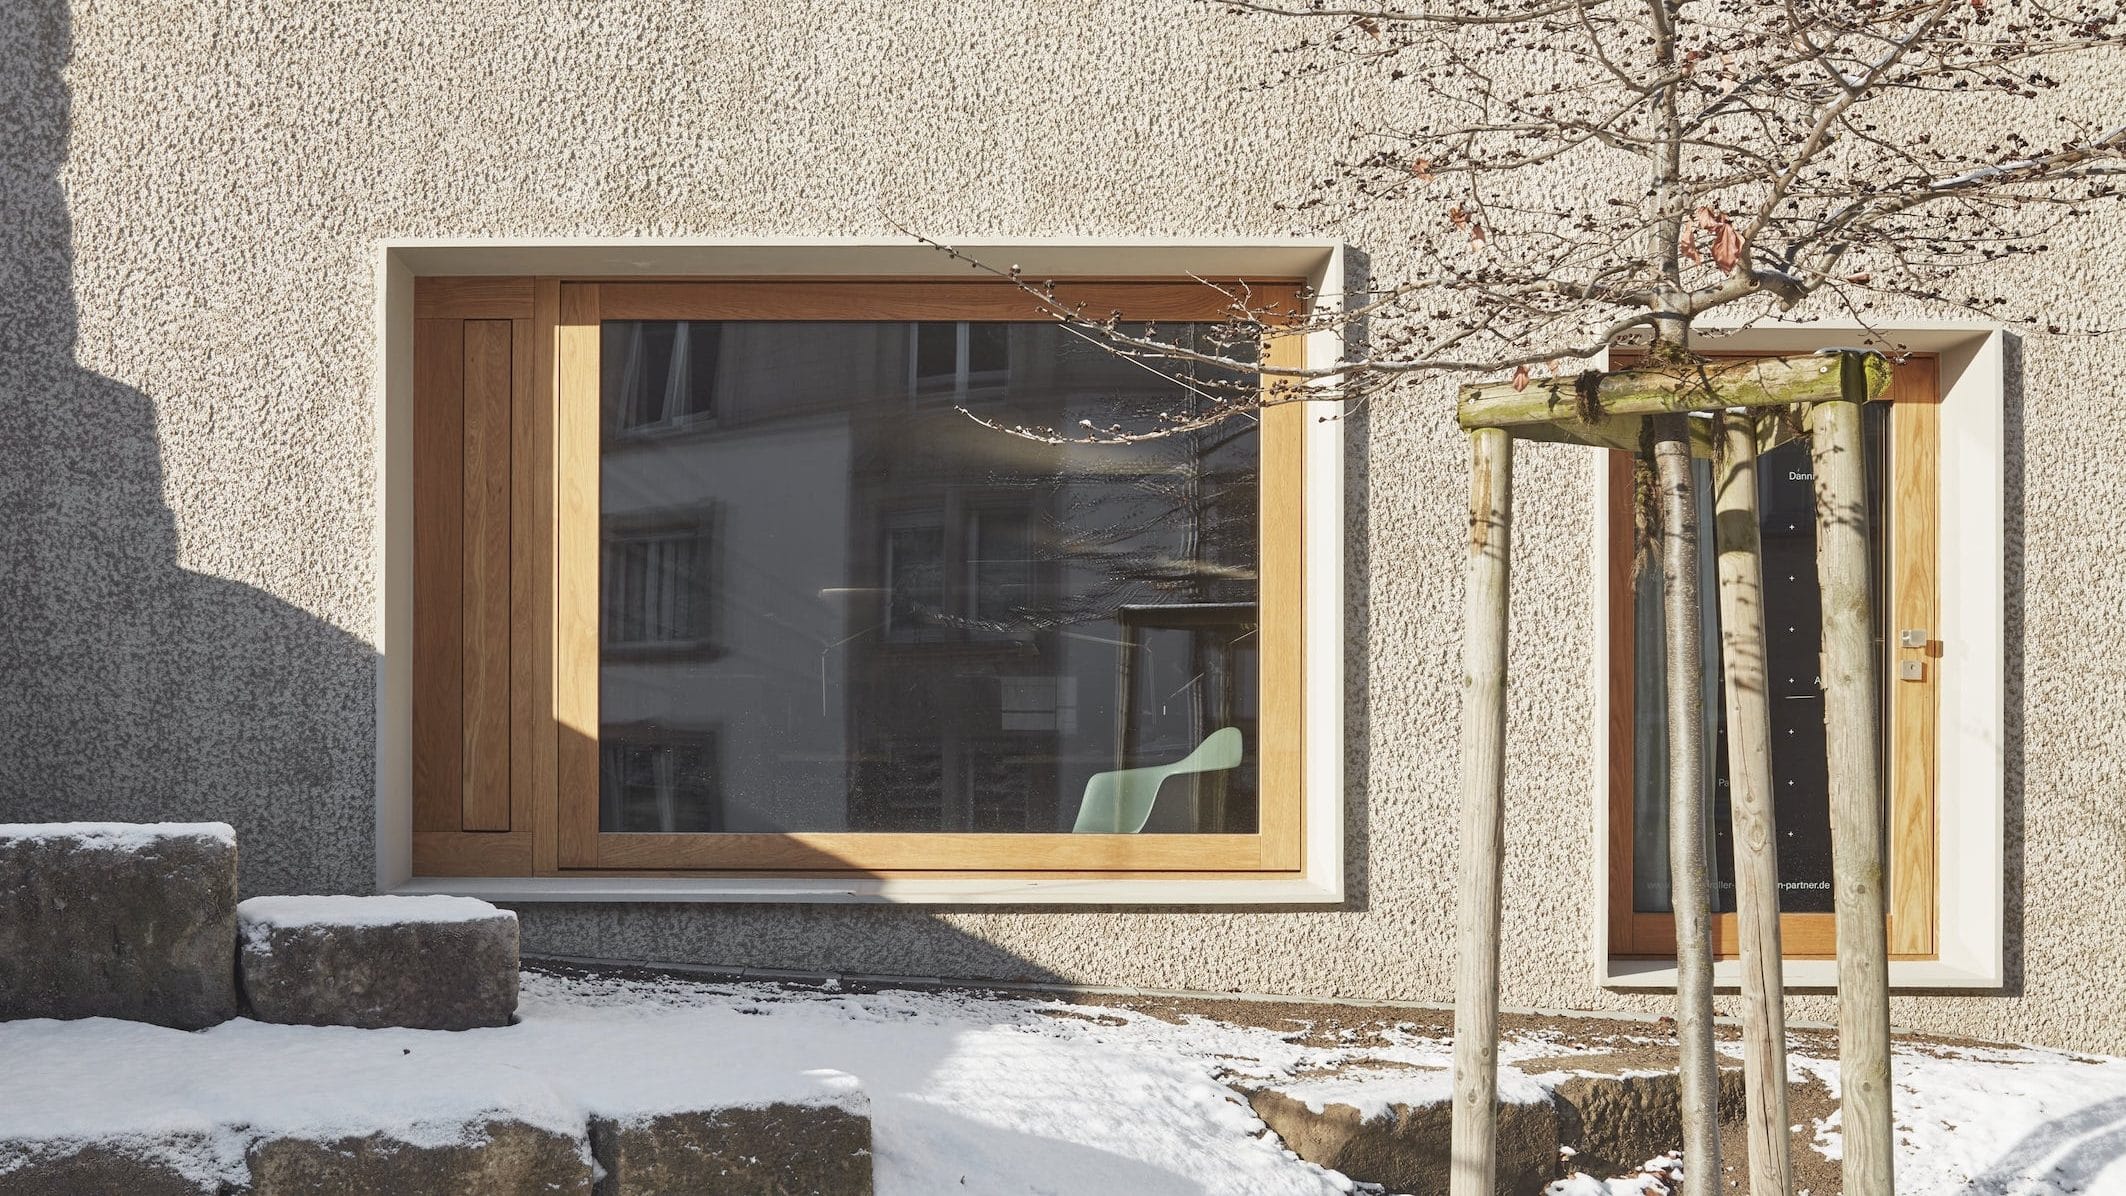 Außenansicht des Wohn-und Geschäftshauses von Dannien Roller Architekten + Partner in Tübingen. Foto: Dietmar Strauß.